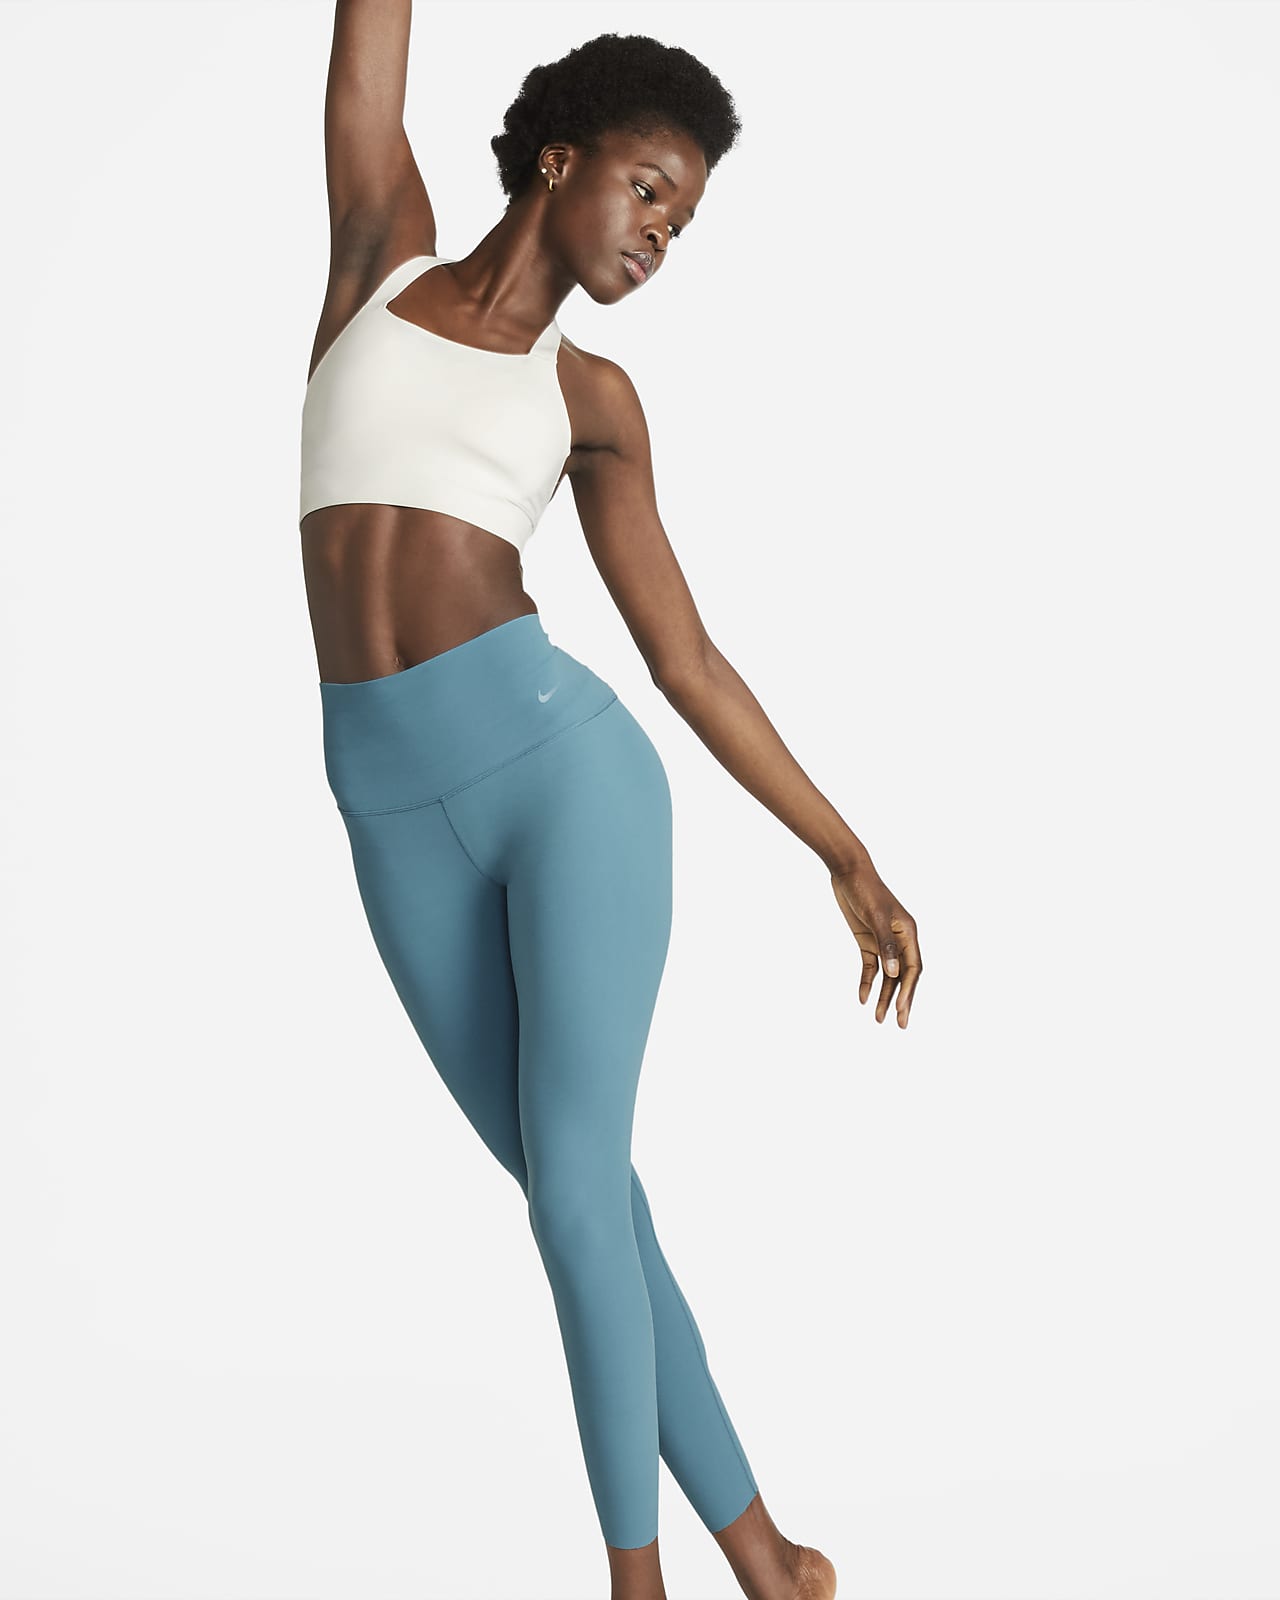 Nike Women's Zenvy Gentle-Support High-Waisted 7/8 Leggings